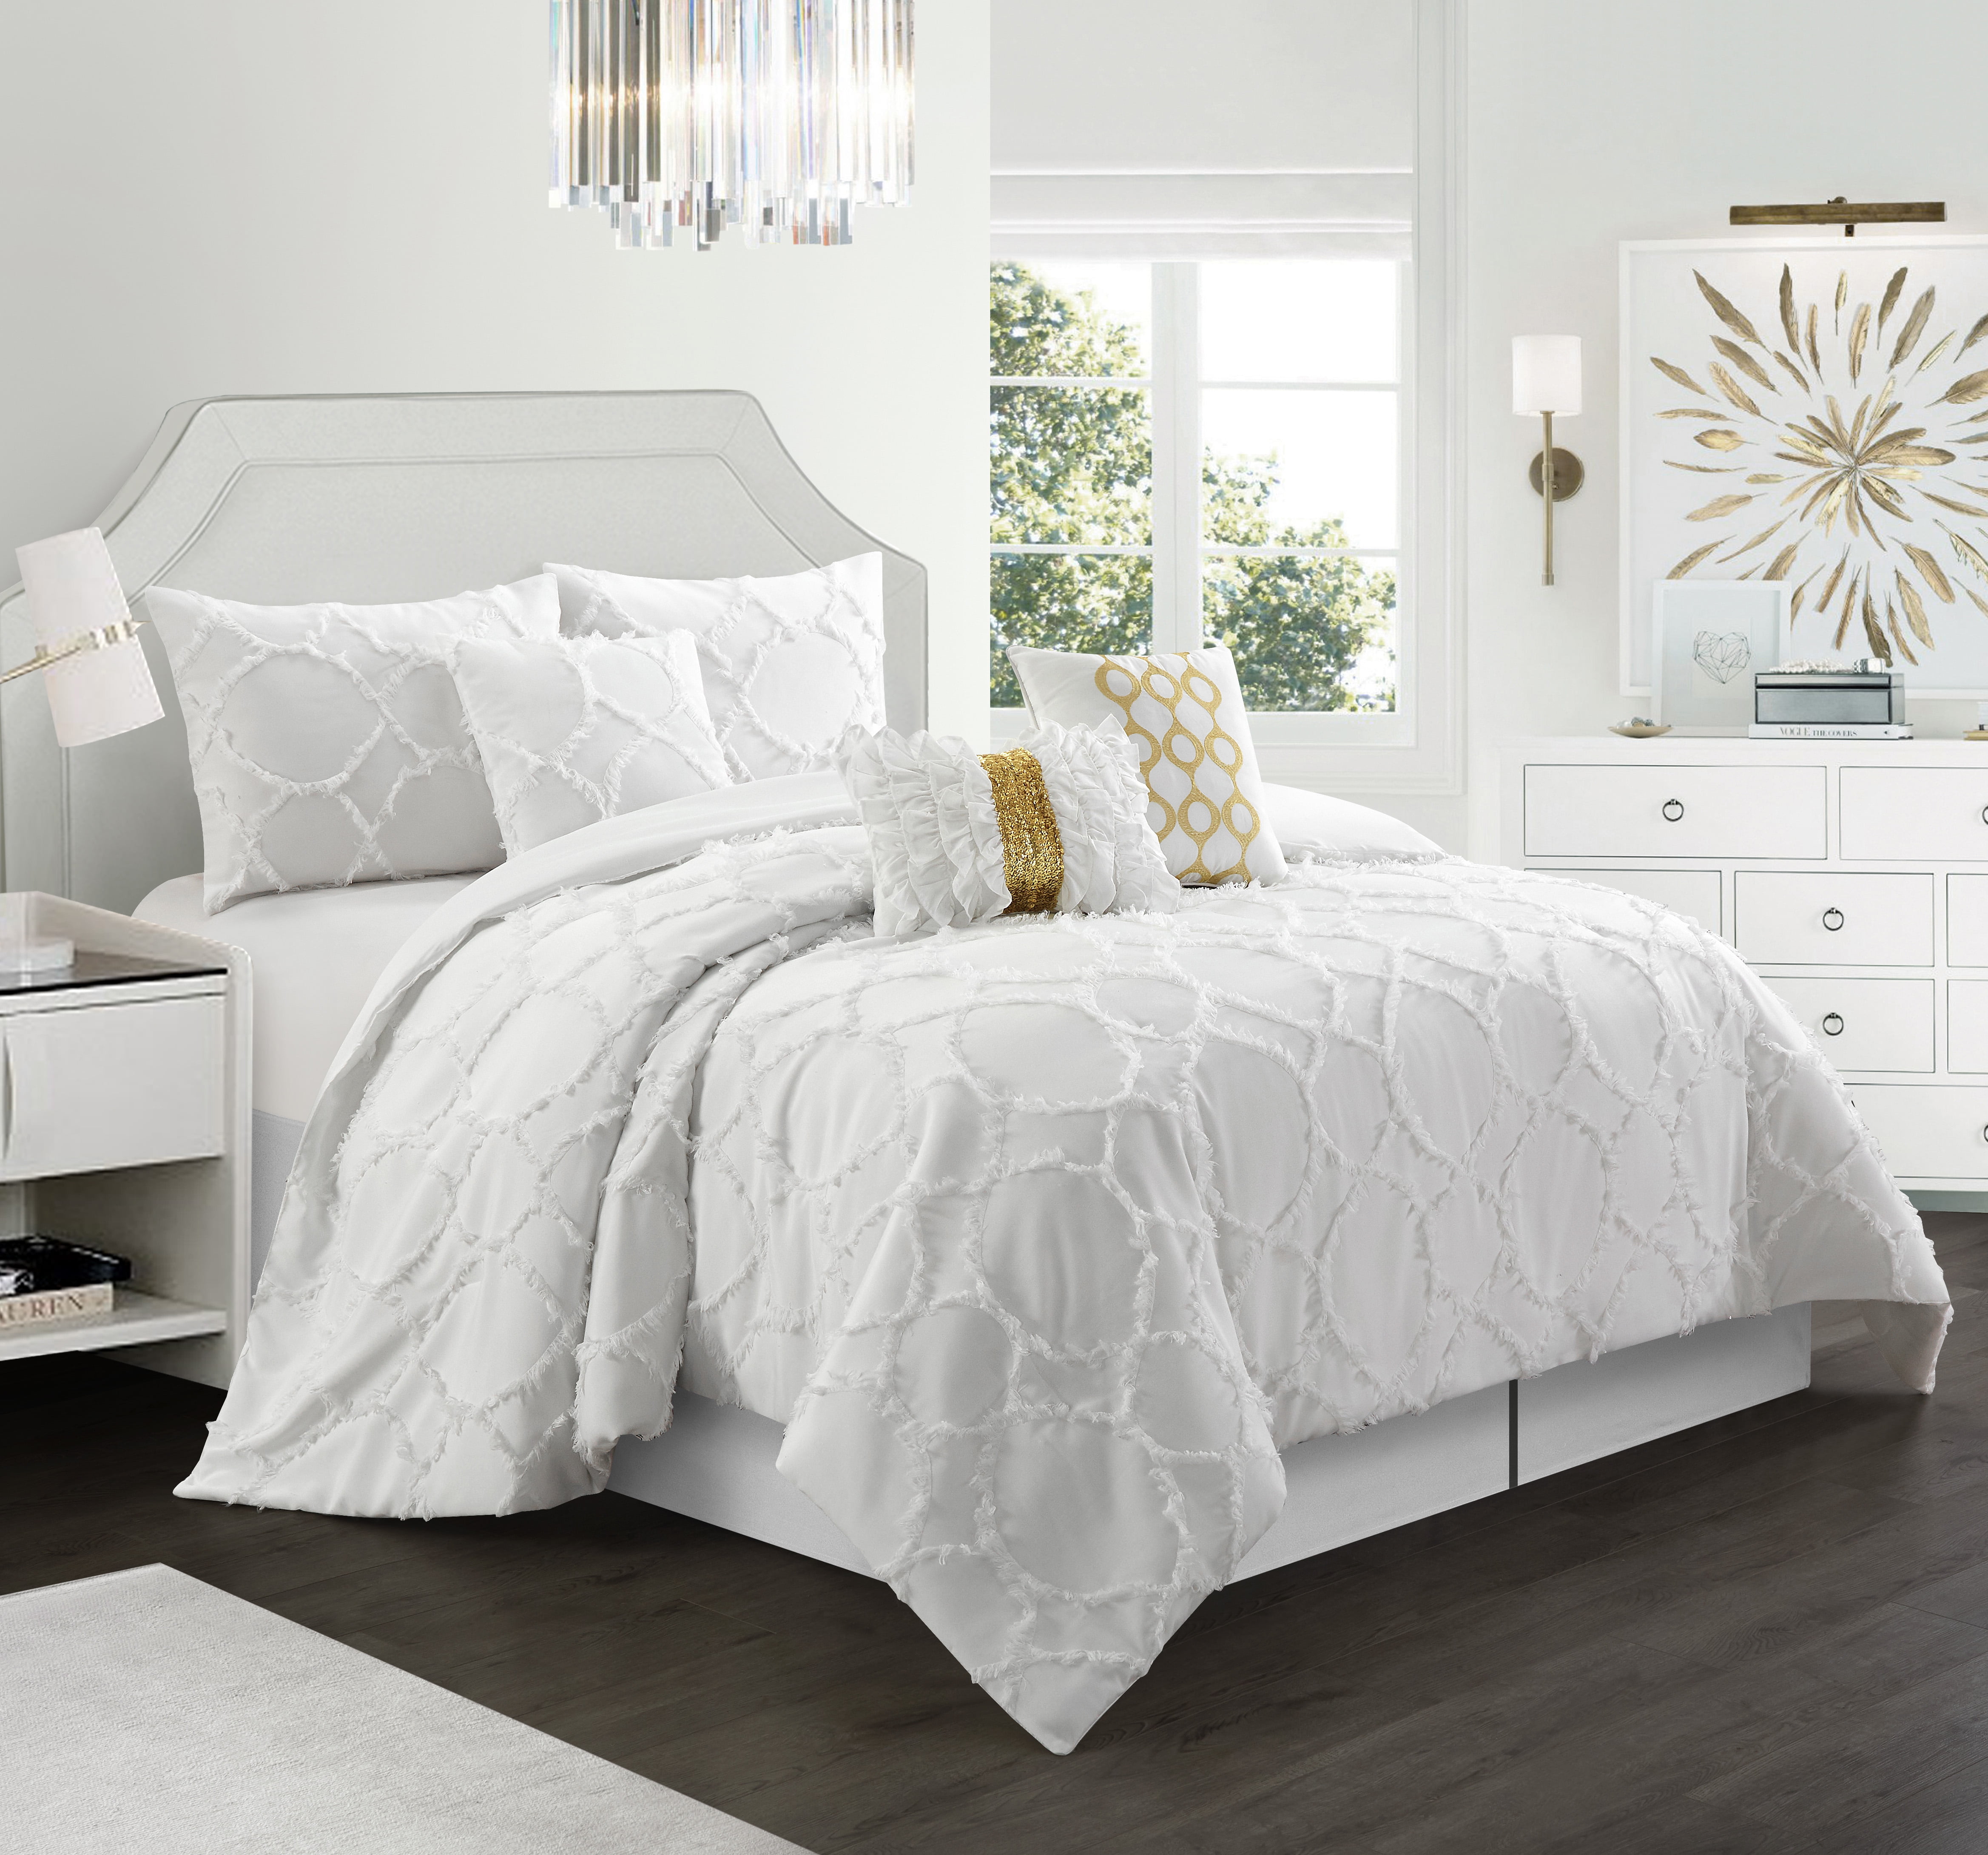 Lanco Home Percias 4-Piece Comforter Bedding Set Cal King Queen 